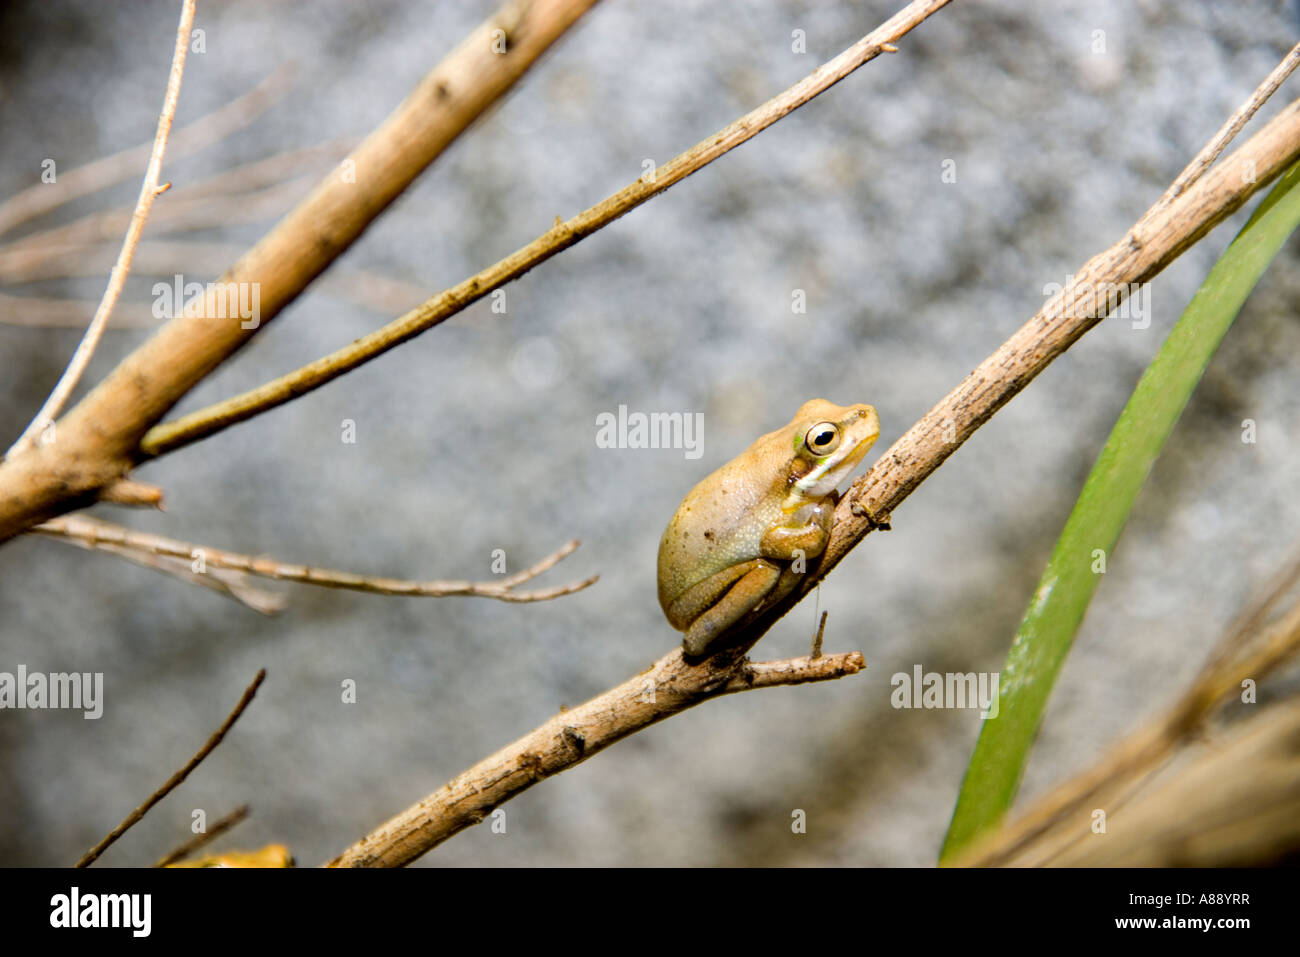 Dainty Green Tree Frog Stock Photo